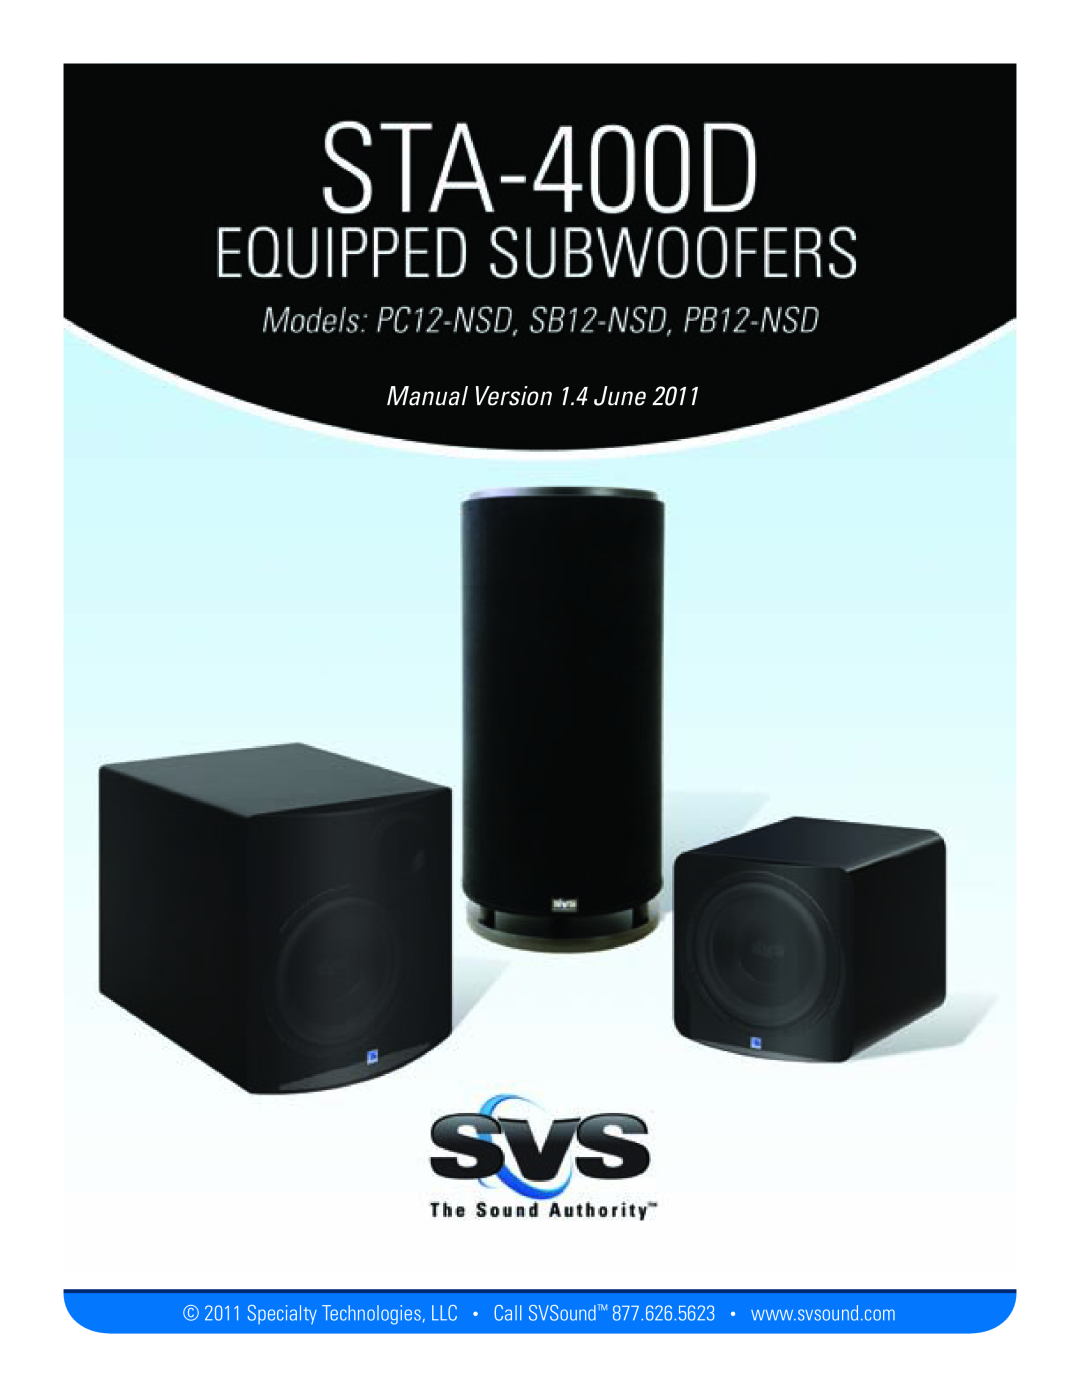 SV Sound PB12-NSD, PC12-NSD, SB12-NSD manual Manual Version 1.4 June, STA-400DEquipped Subs, SV Sound, LLC 